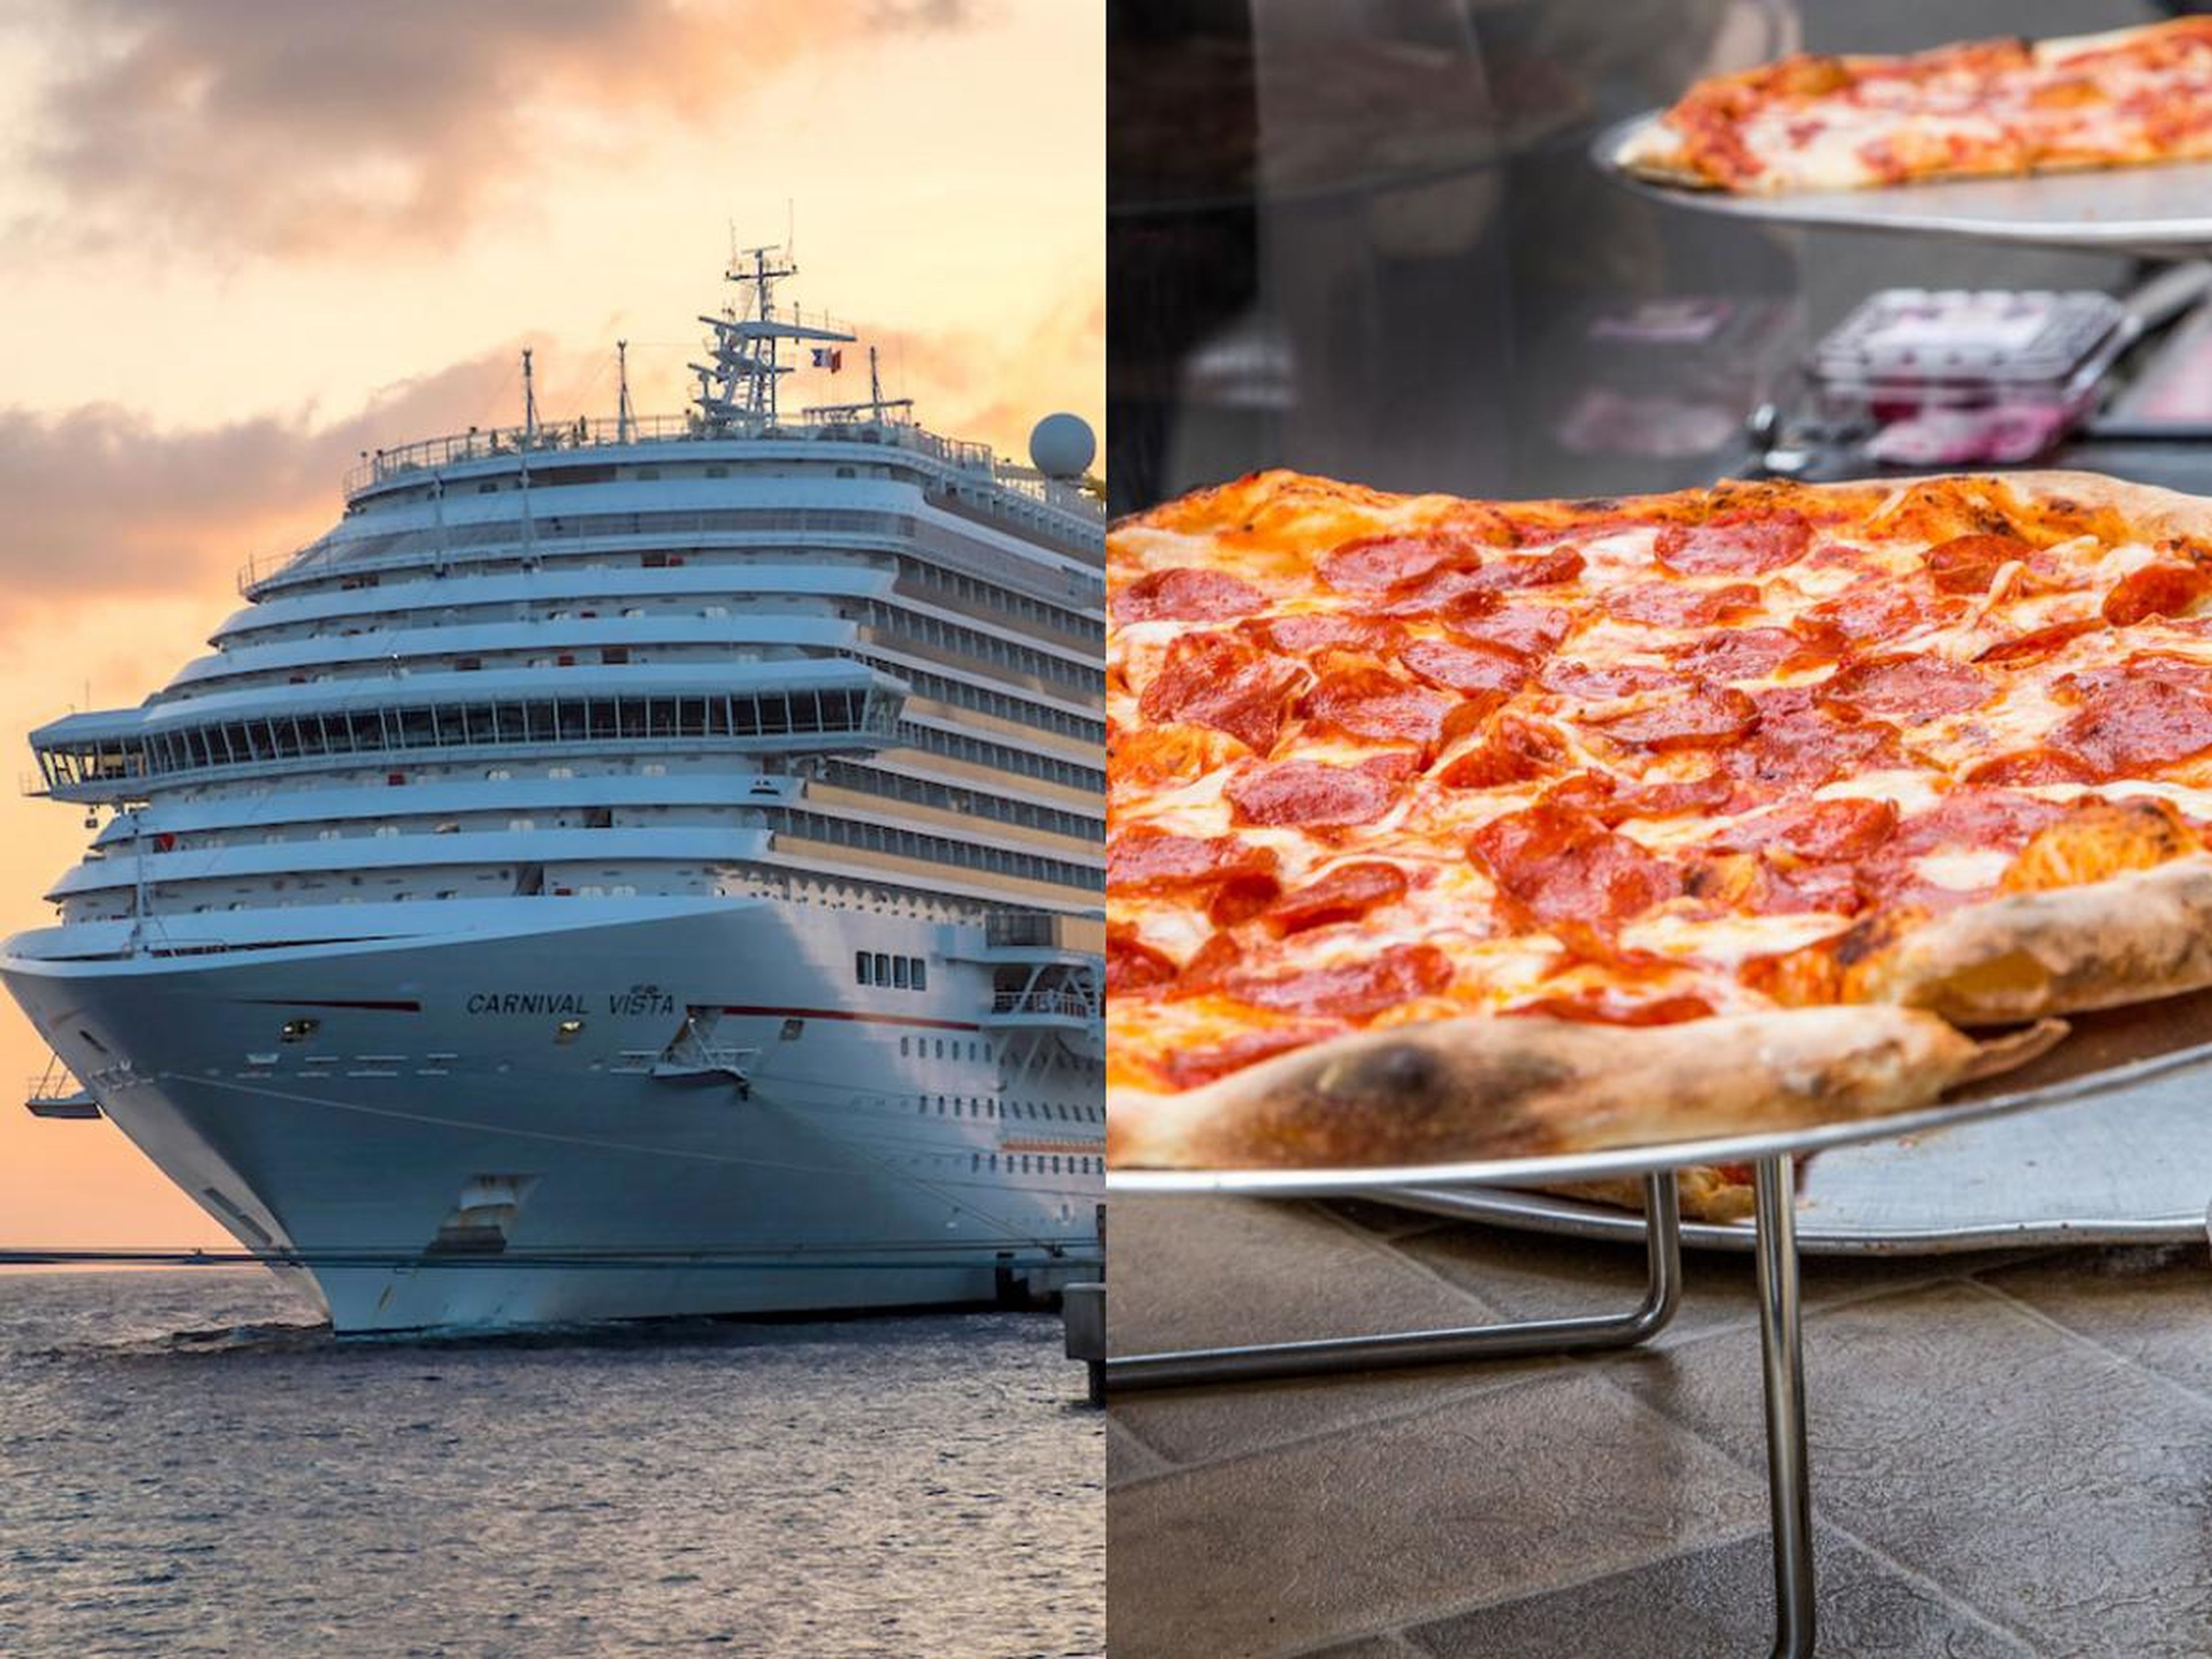 El Crucero Carnival dice que sus pasajeros pueden señalar su ubicación en un mapa para obtener la entrega de pizza y bebida.